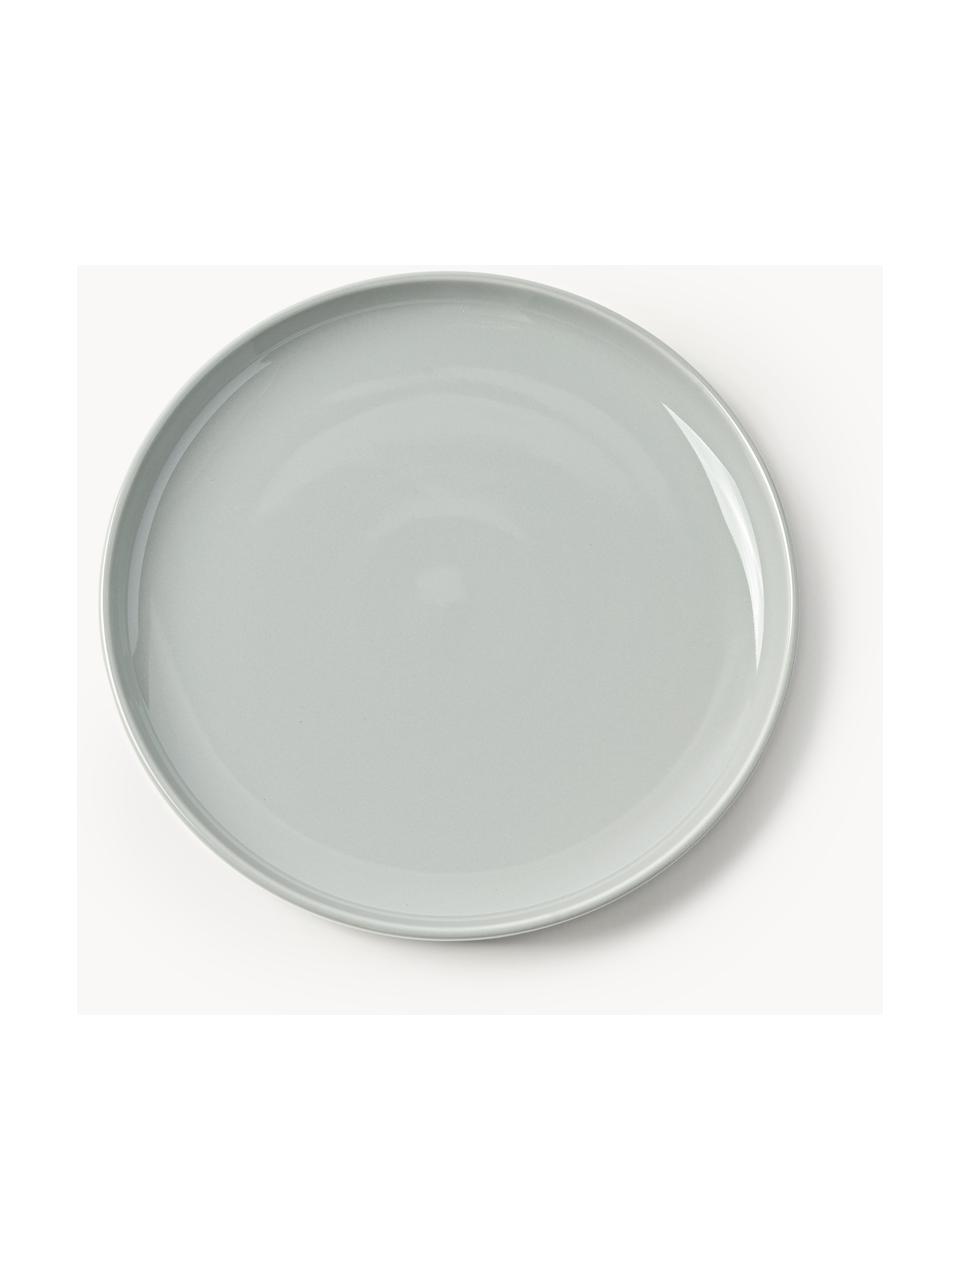 Porzellan-Speiseteller Nessa, 4 Stück, Hochwertiges Hartporzellan, glasiert, Hellgrau, glänzend, Ø 26 cm